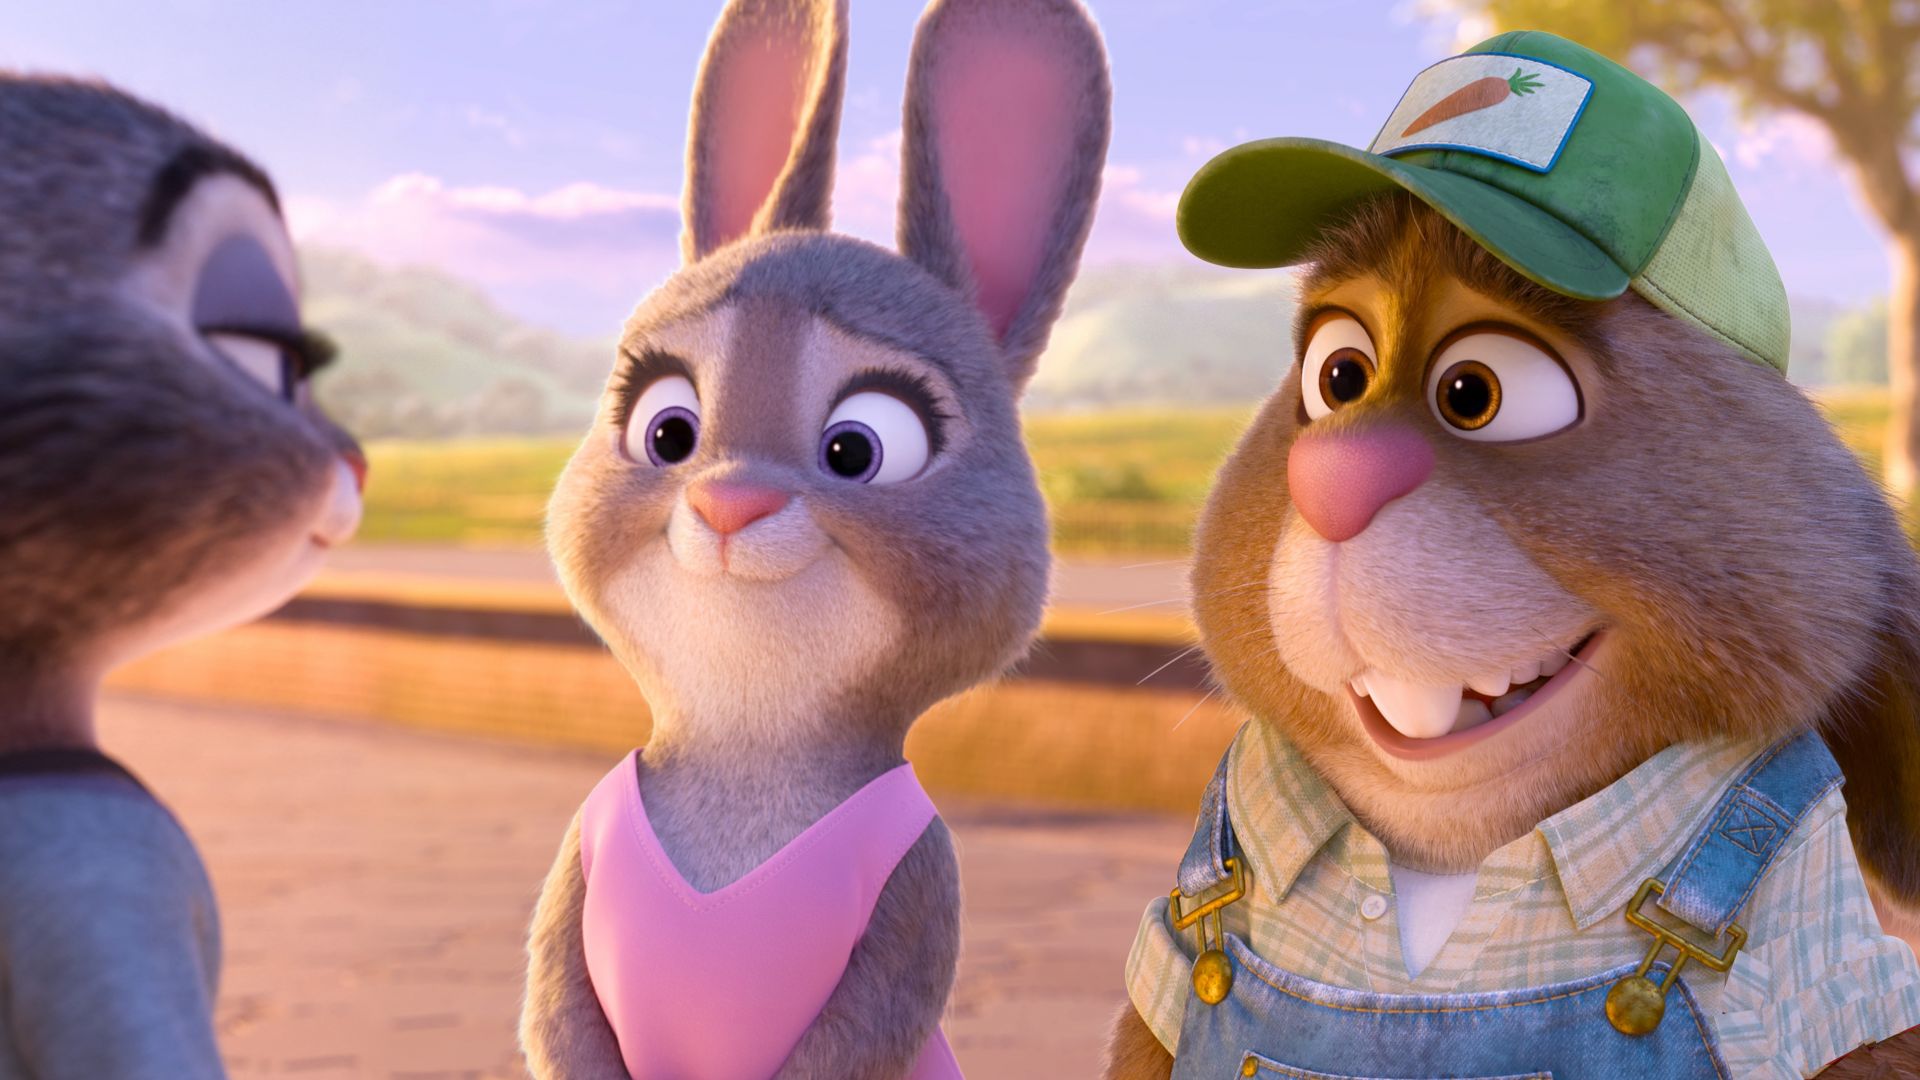 Зверополис, Зайки, Zootopia, rabbit, Best Animation Movies of 2016, cartoon (horizontal)